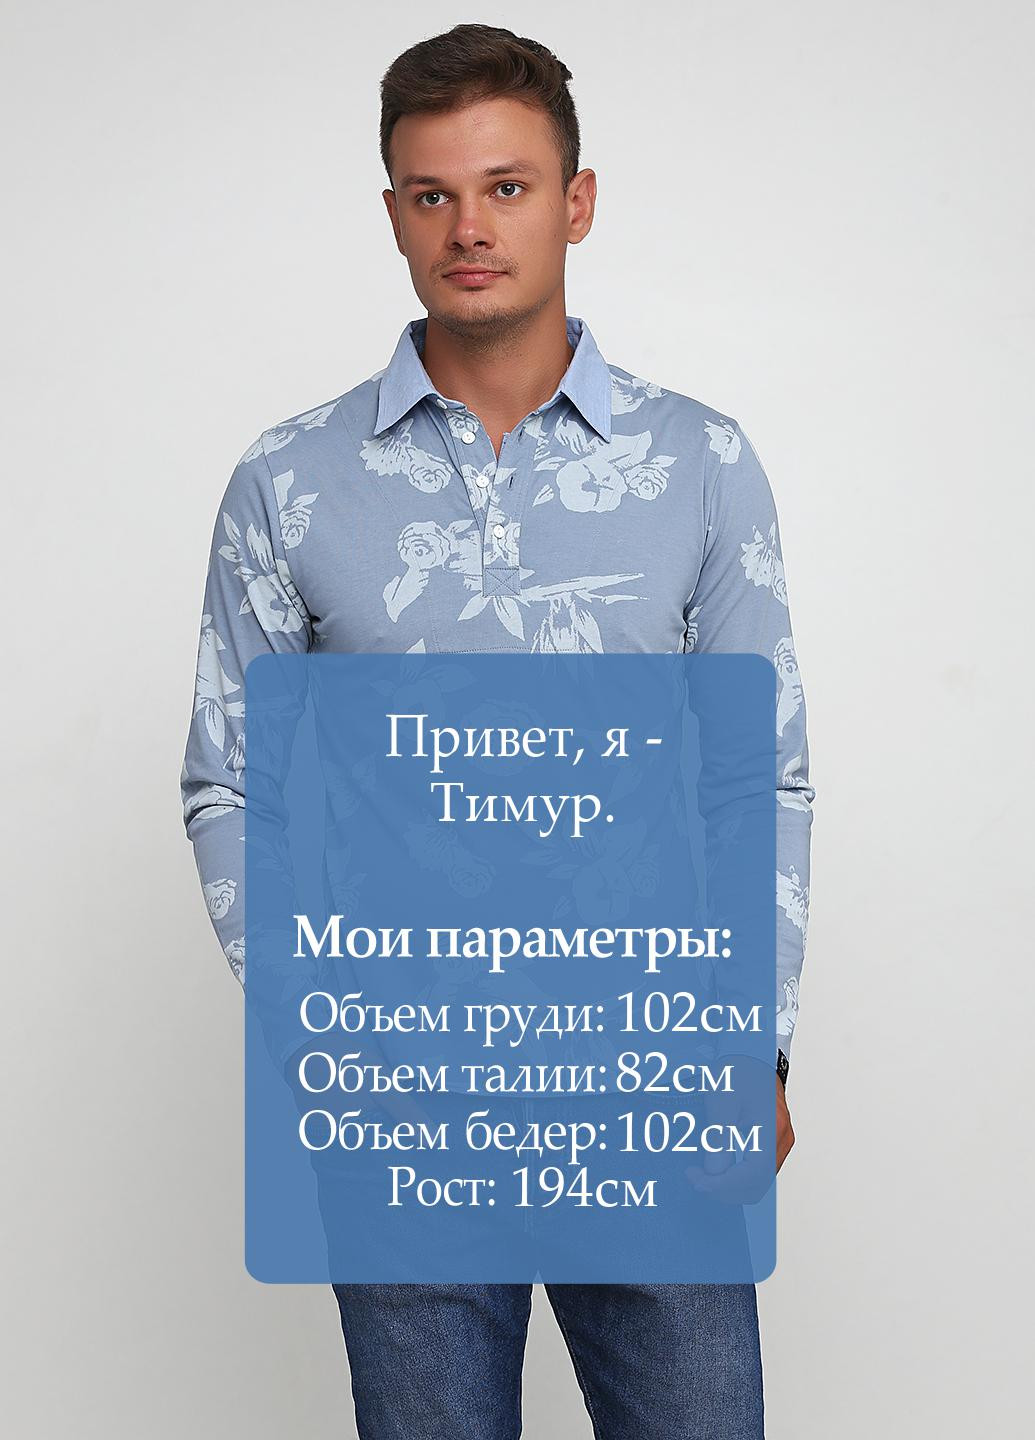 Голубой футболка-поло для мужчин M.O.D. с рисунком